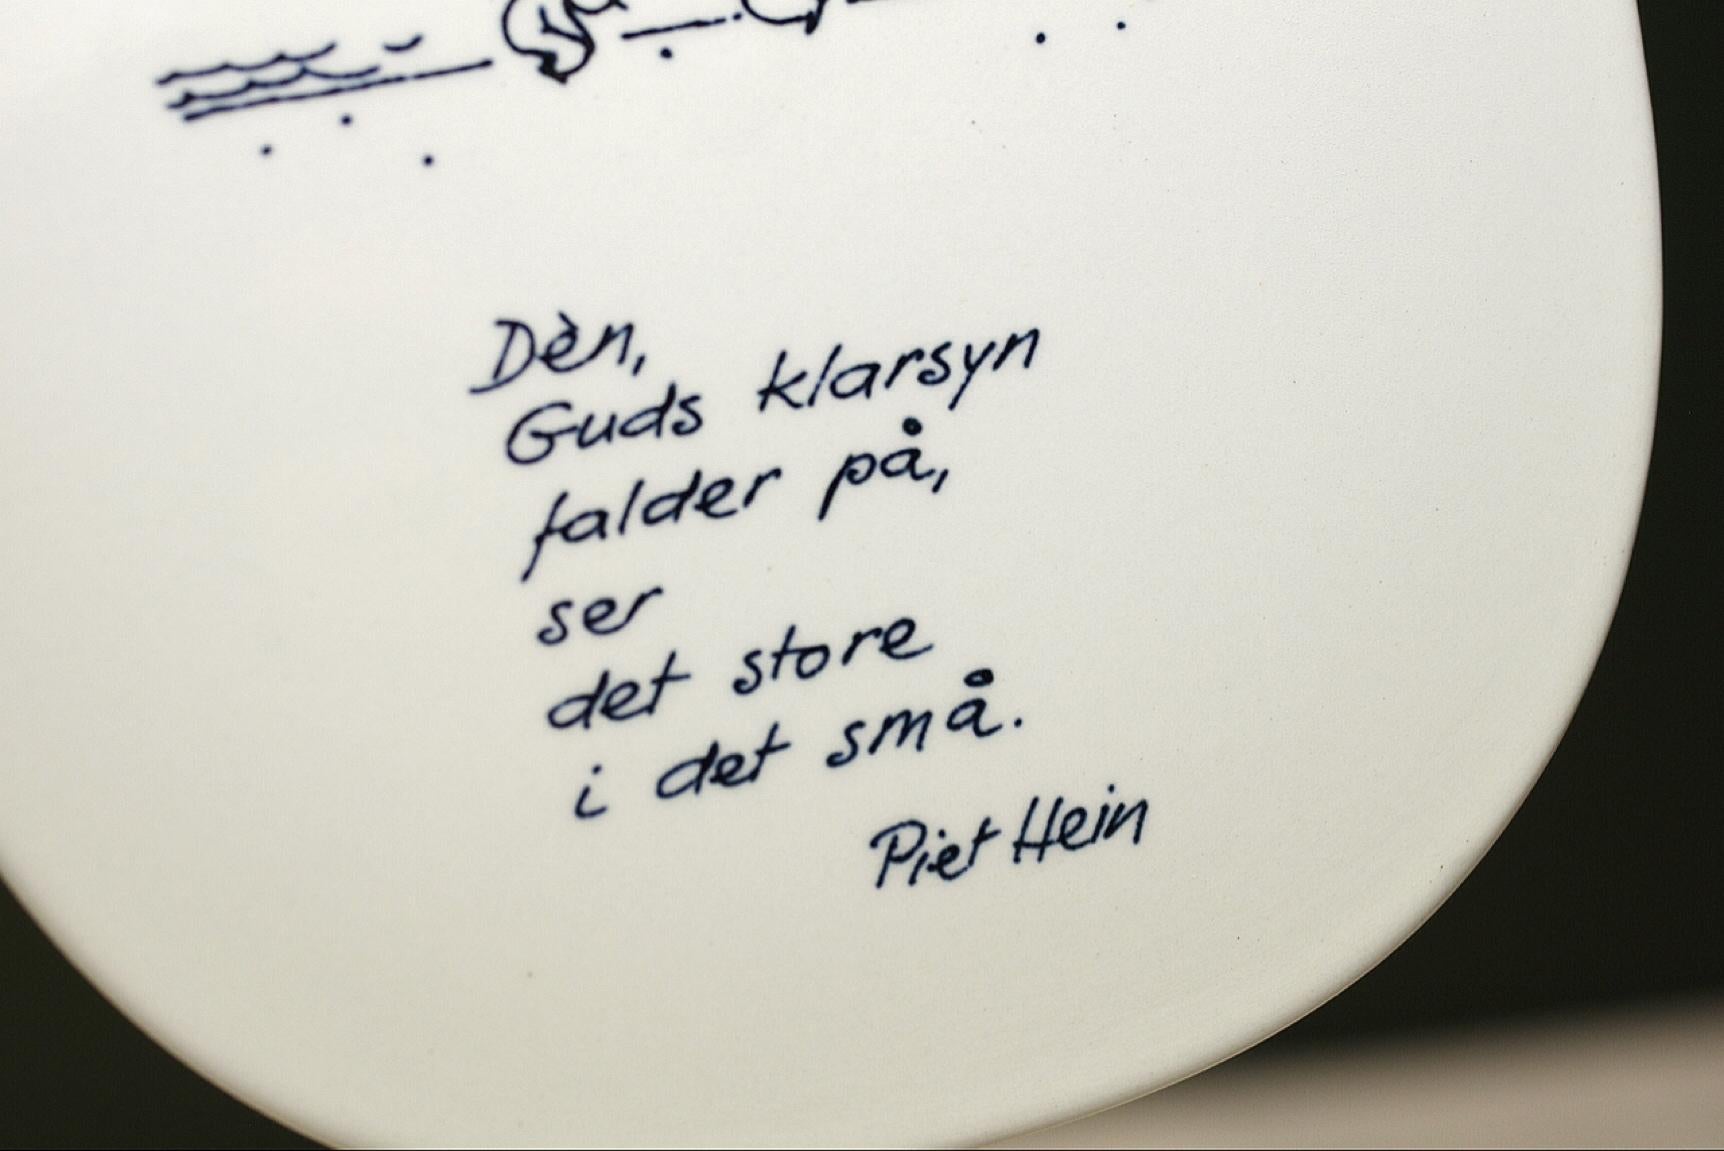 Piet Hein - Wall plate - Royal Copenhagen For Sale 1